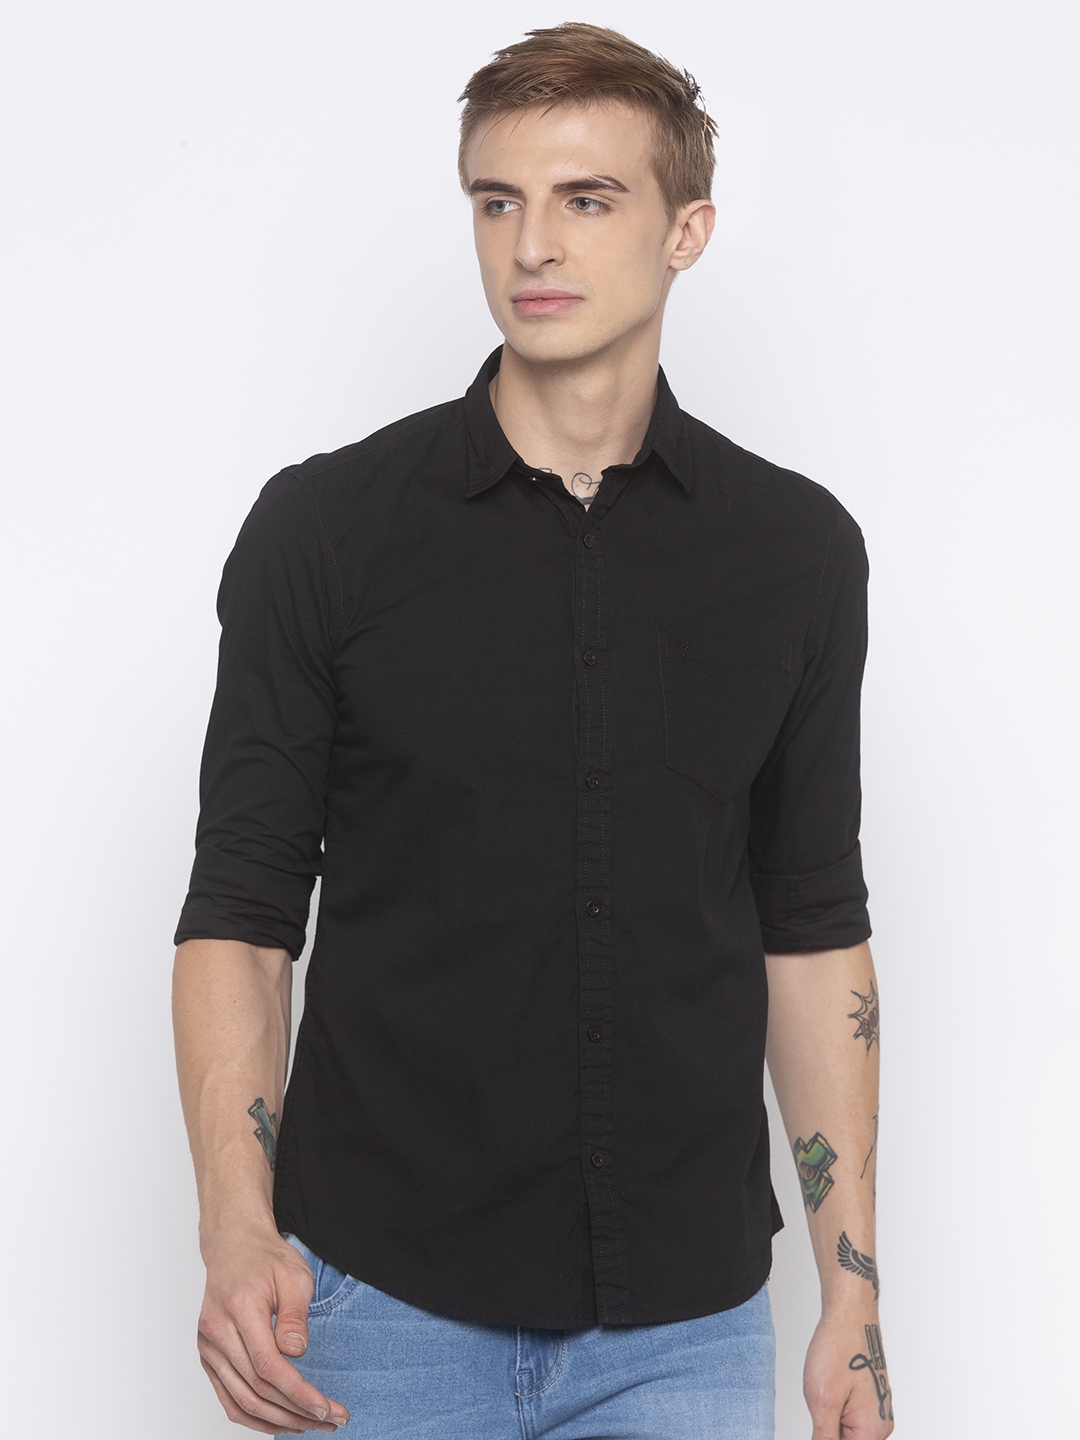 Buy Globus Men Black Regular Fit Solid Casual Shirt - Shirts for Men ...